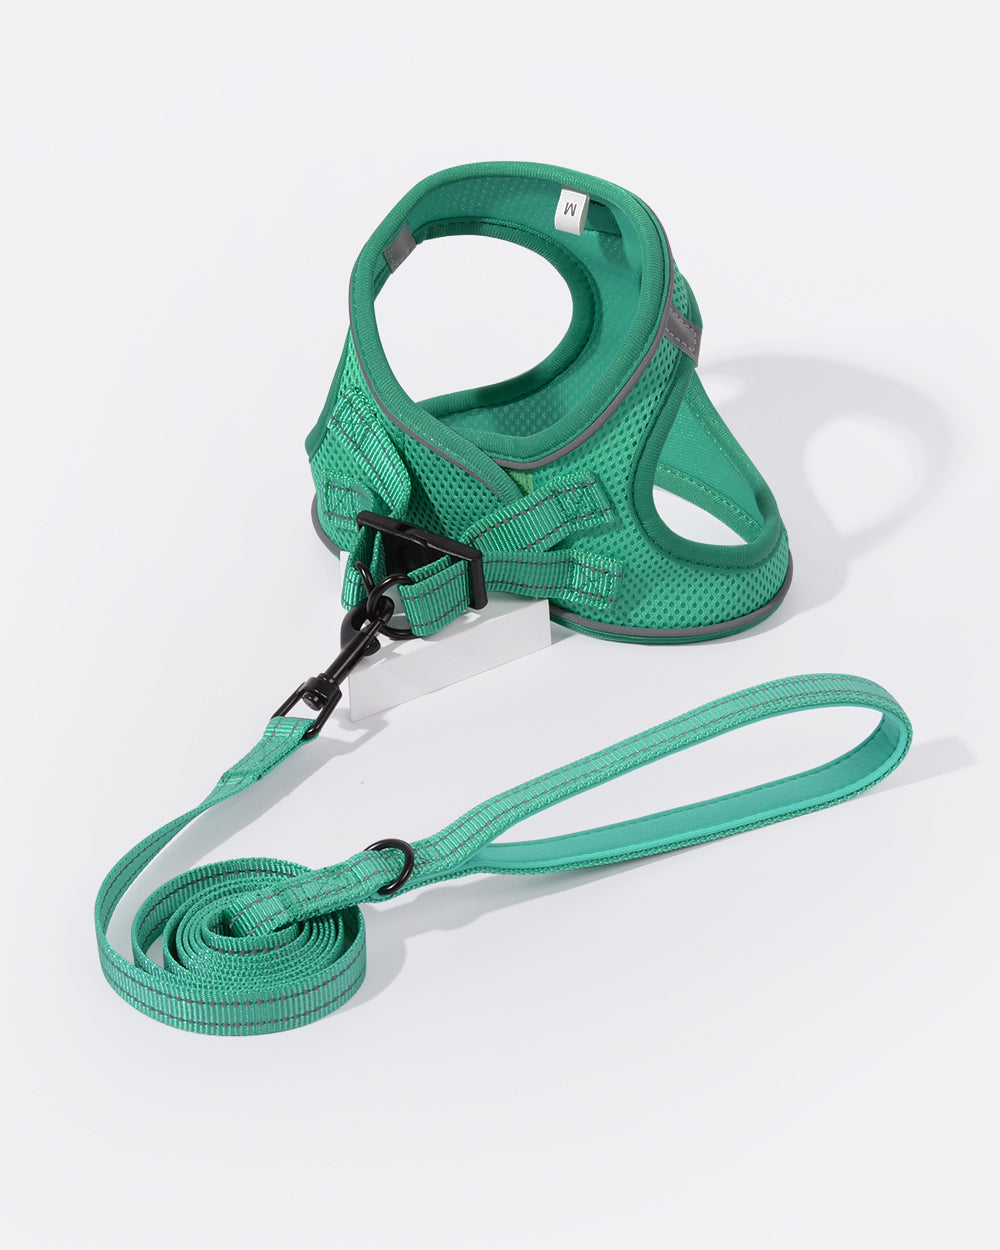 OxyMesh 透氣胸背帶連牽繩套裝 - 芬蘭綠